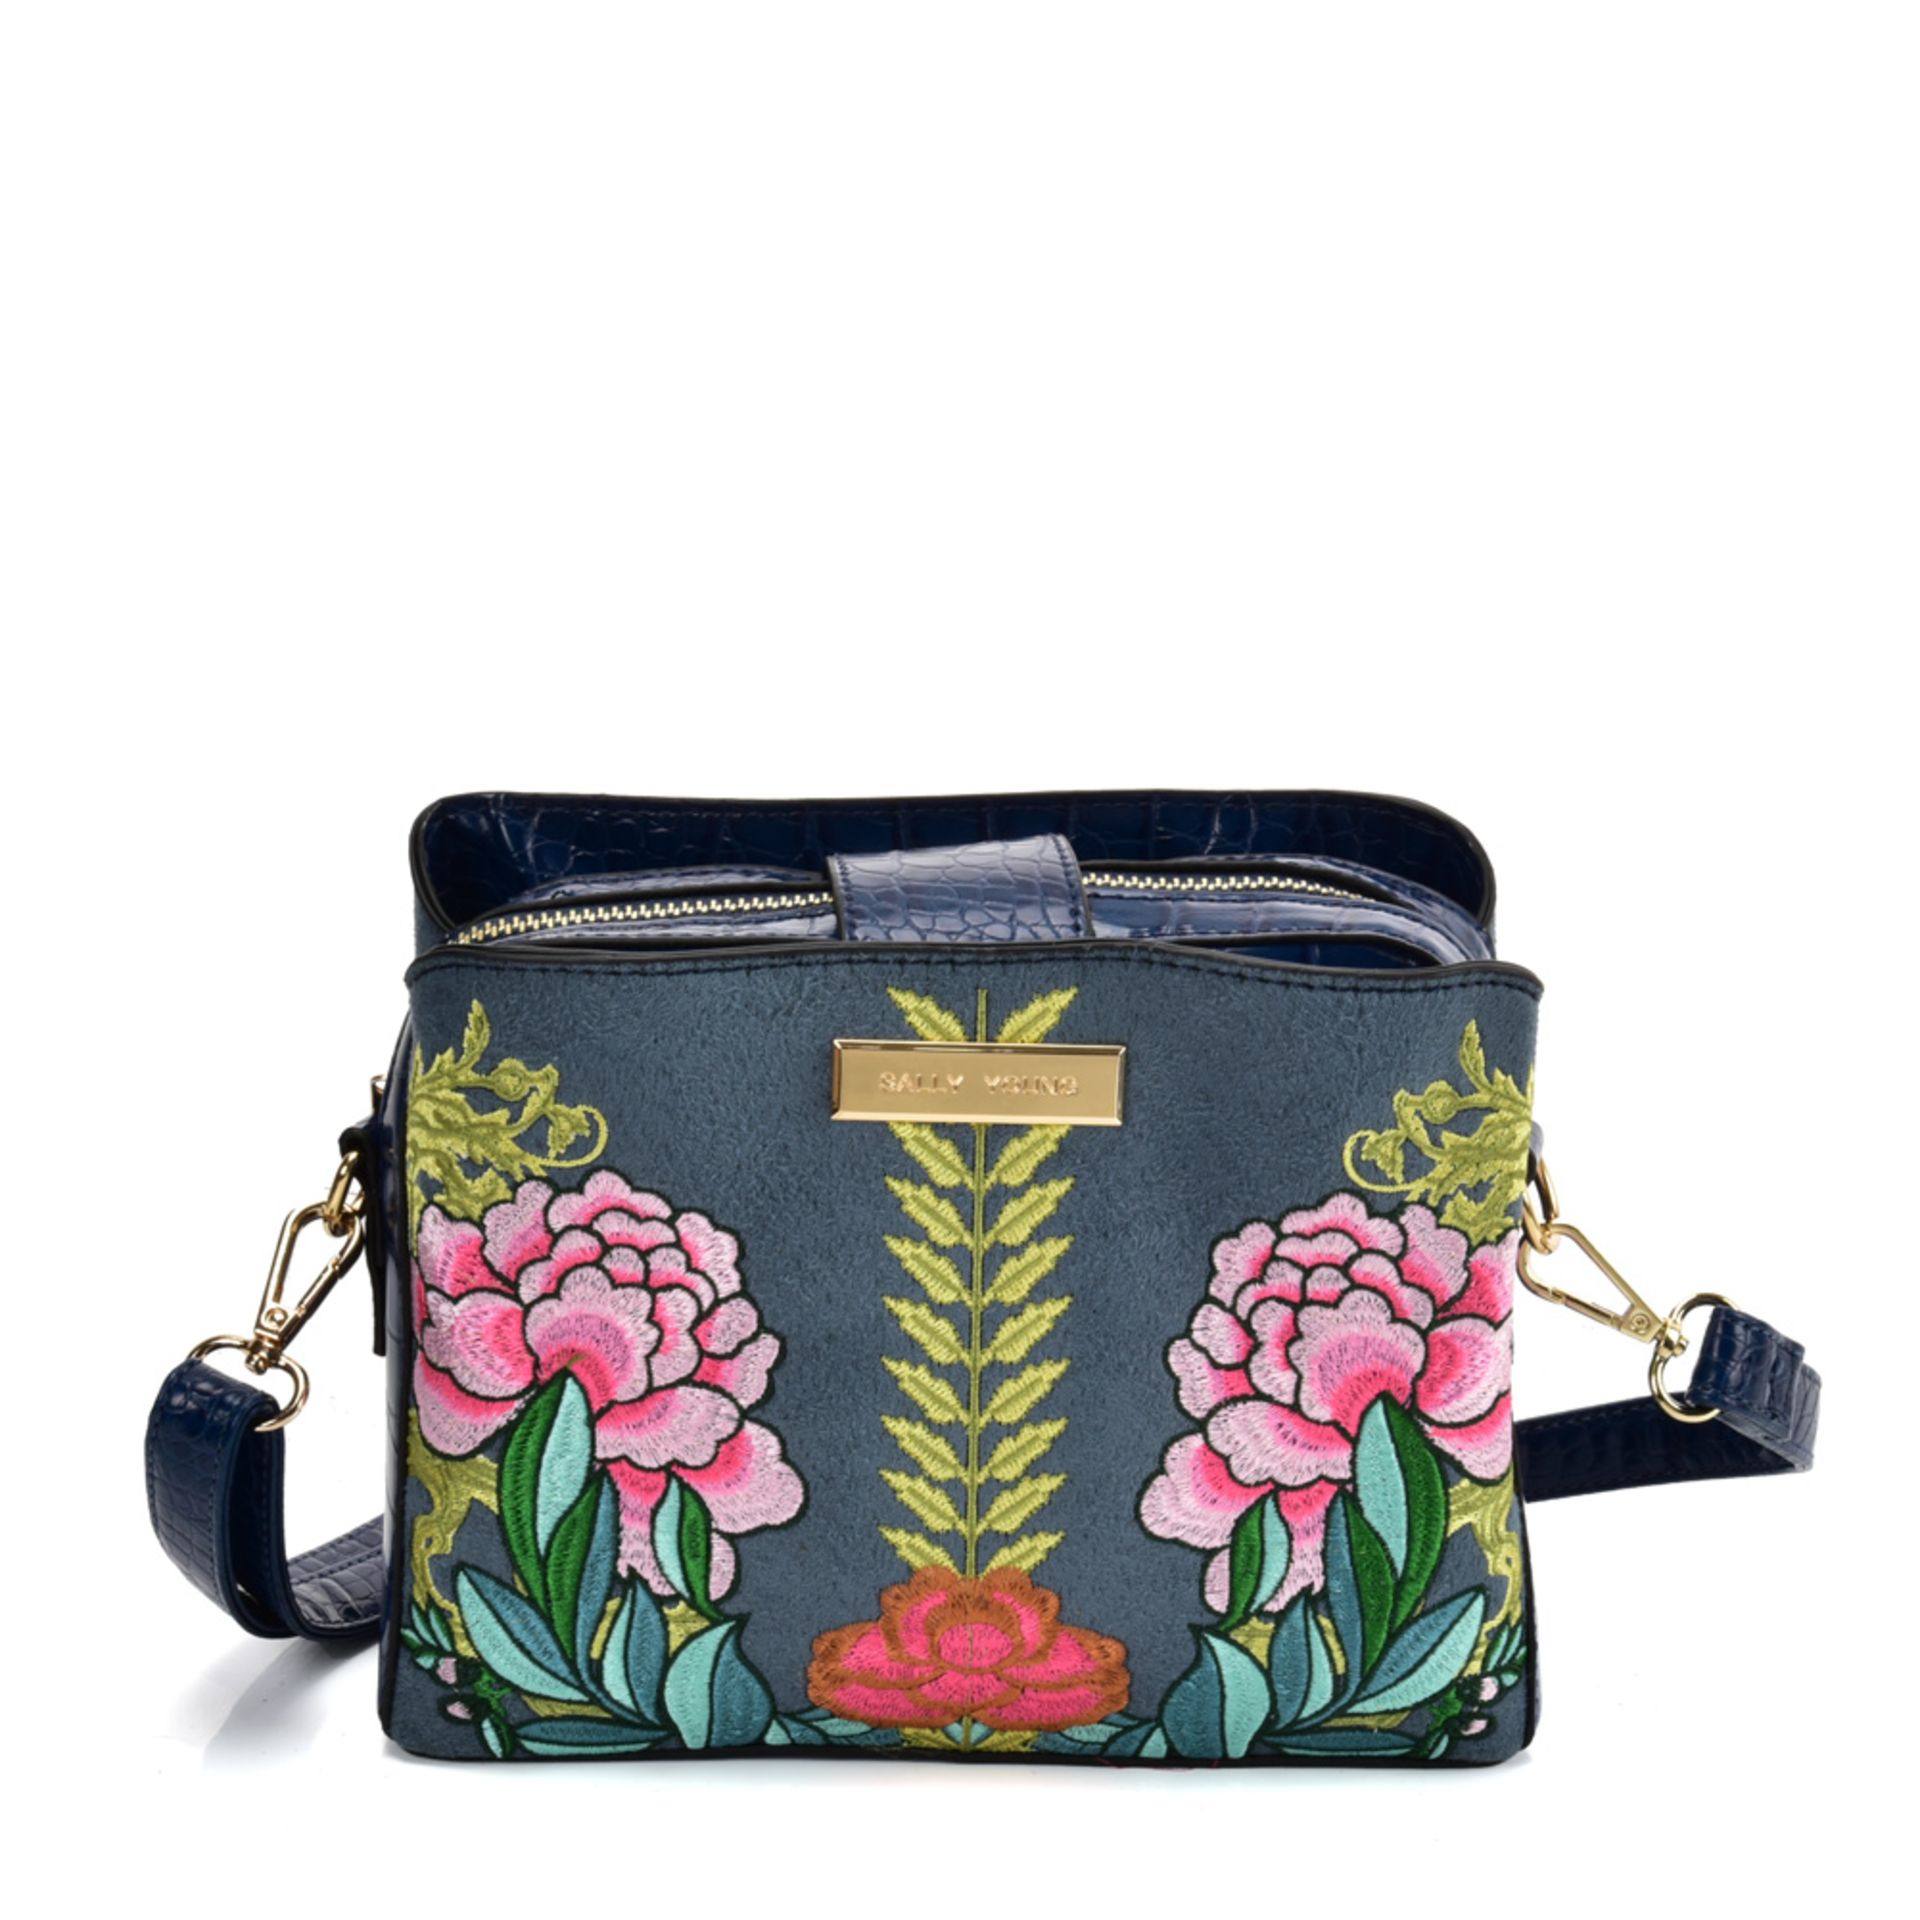 BLUE - Handbag With Retro Flower Printing Design